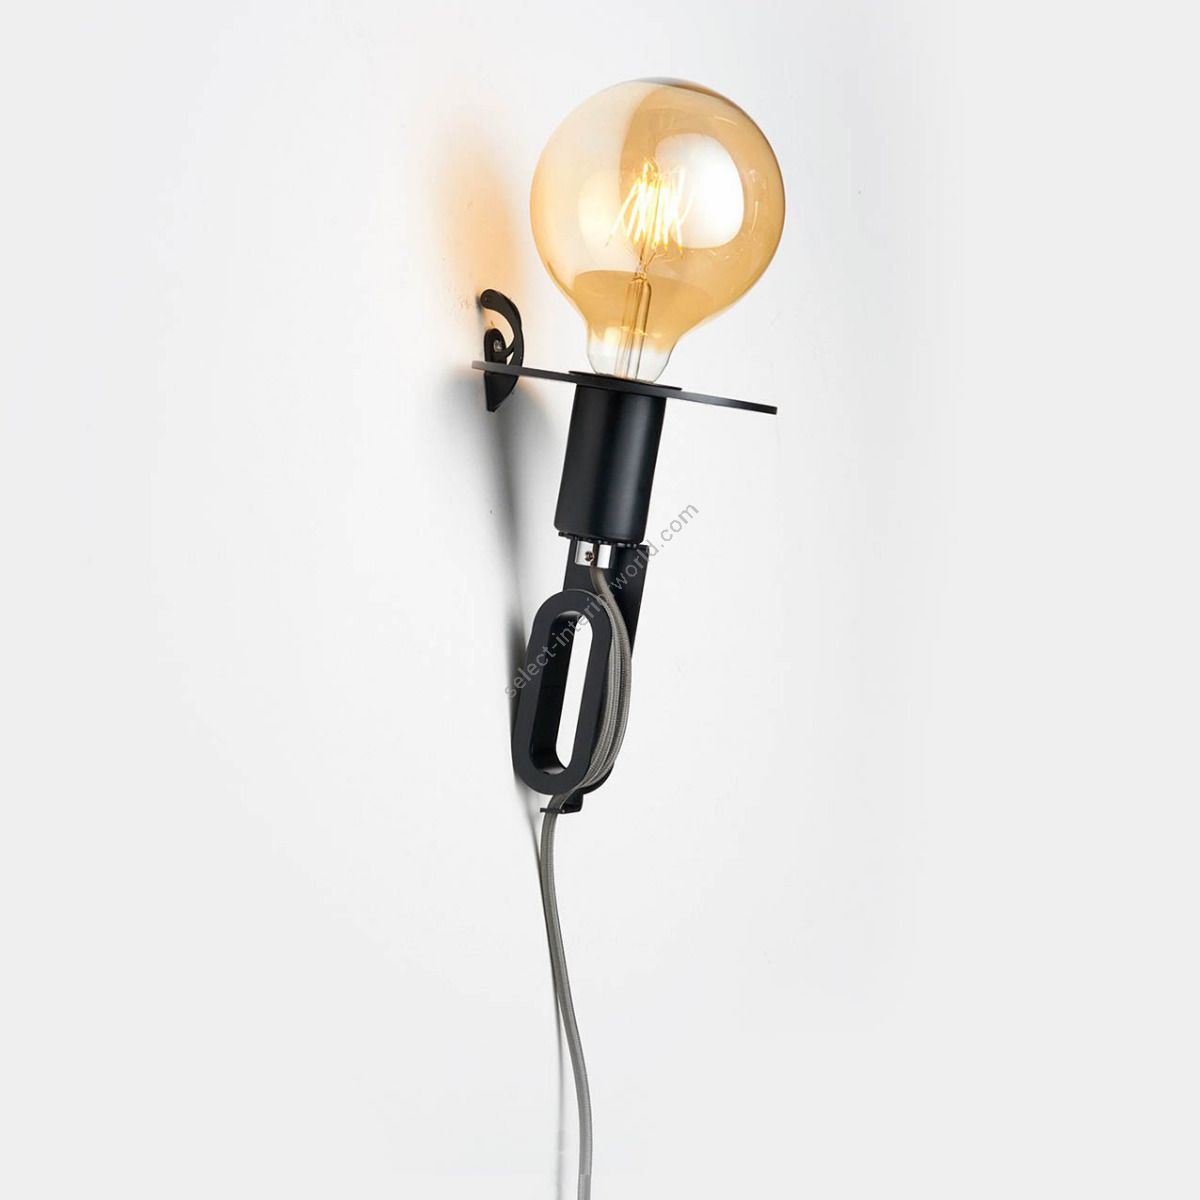 Zava Driyos Naked / Dekorative Wandlampe im minimalistische Stil, Kabellänge verstellbar